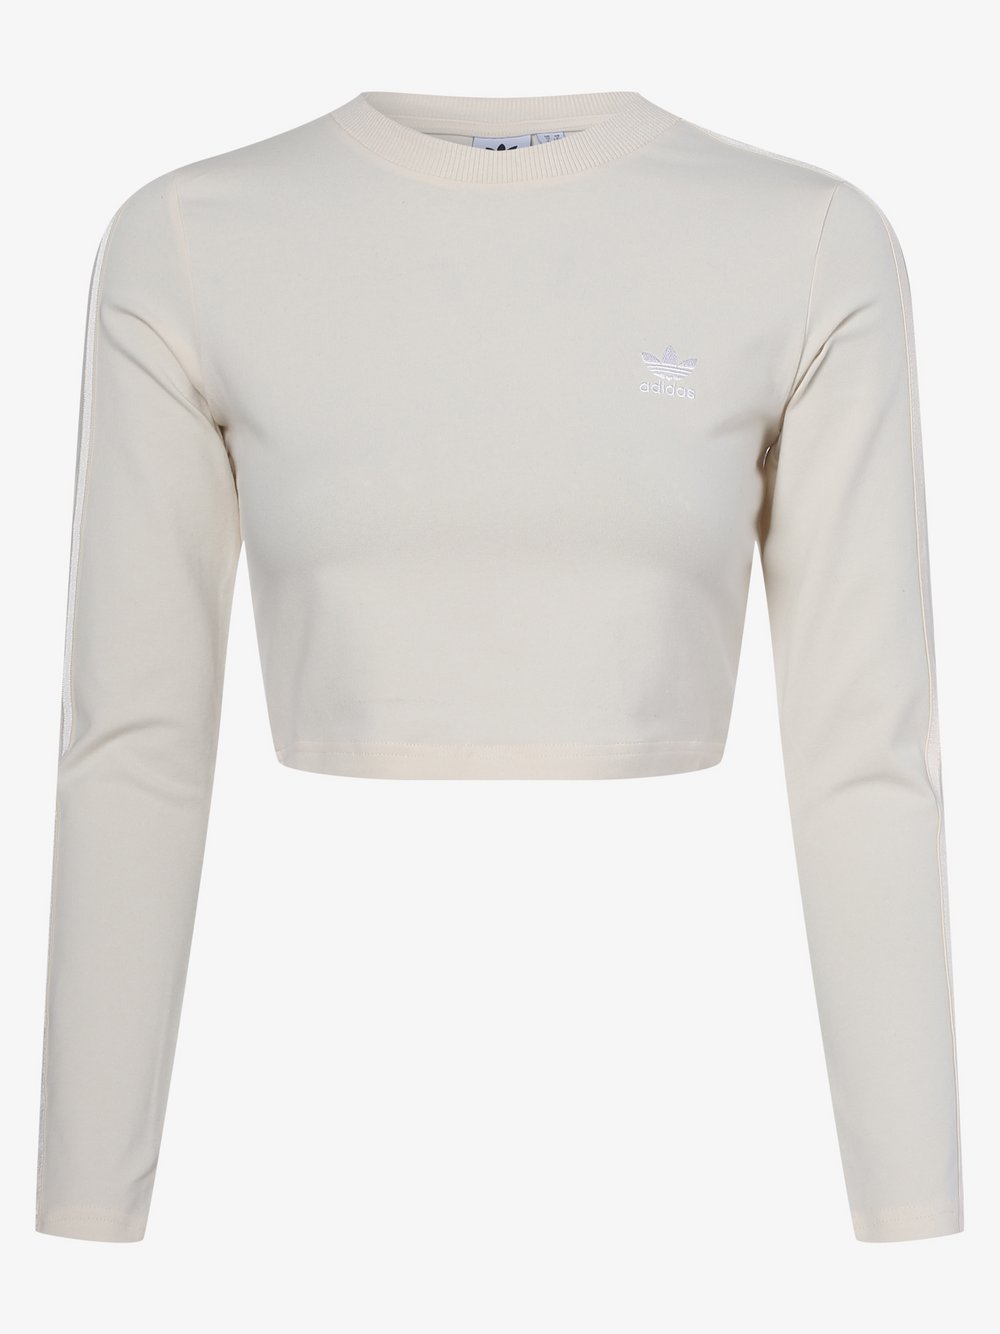 Adidas Originals - Damska koszulka z długim rękawem, biały